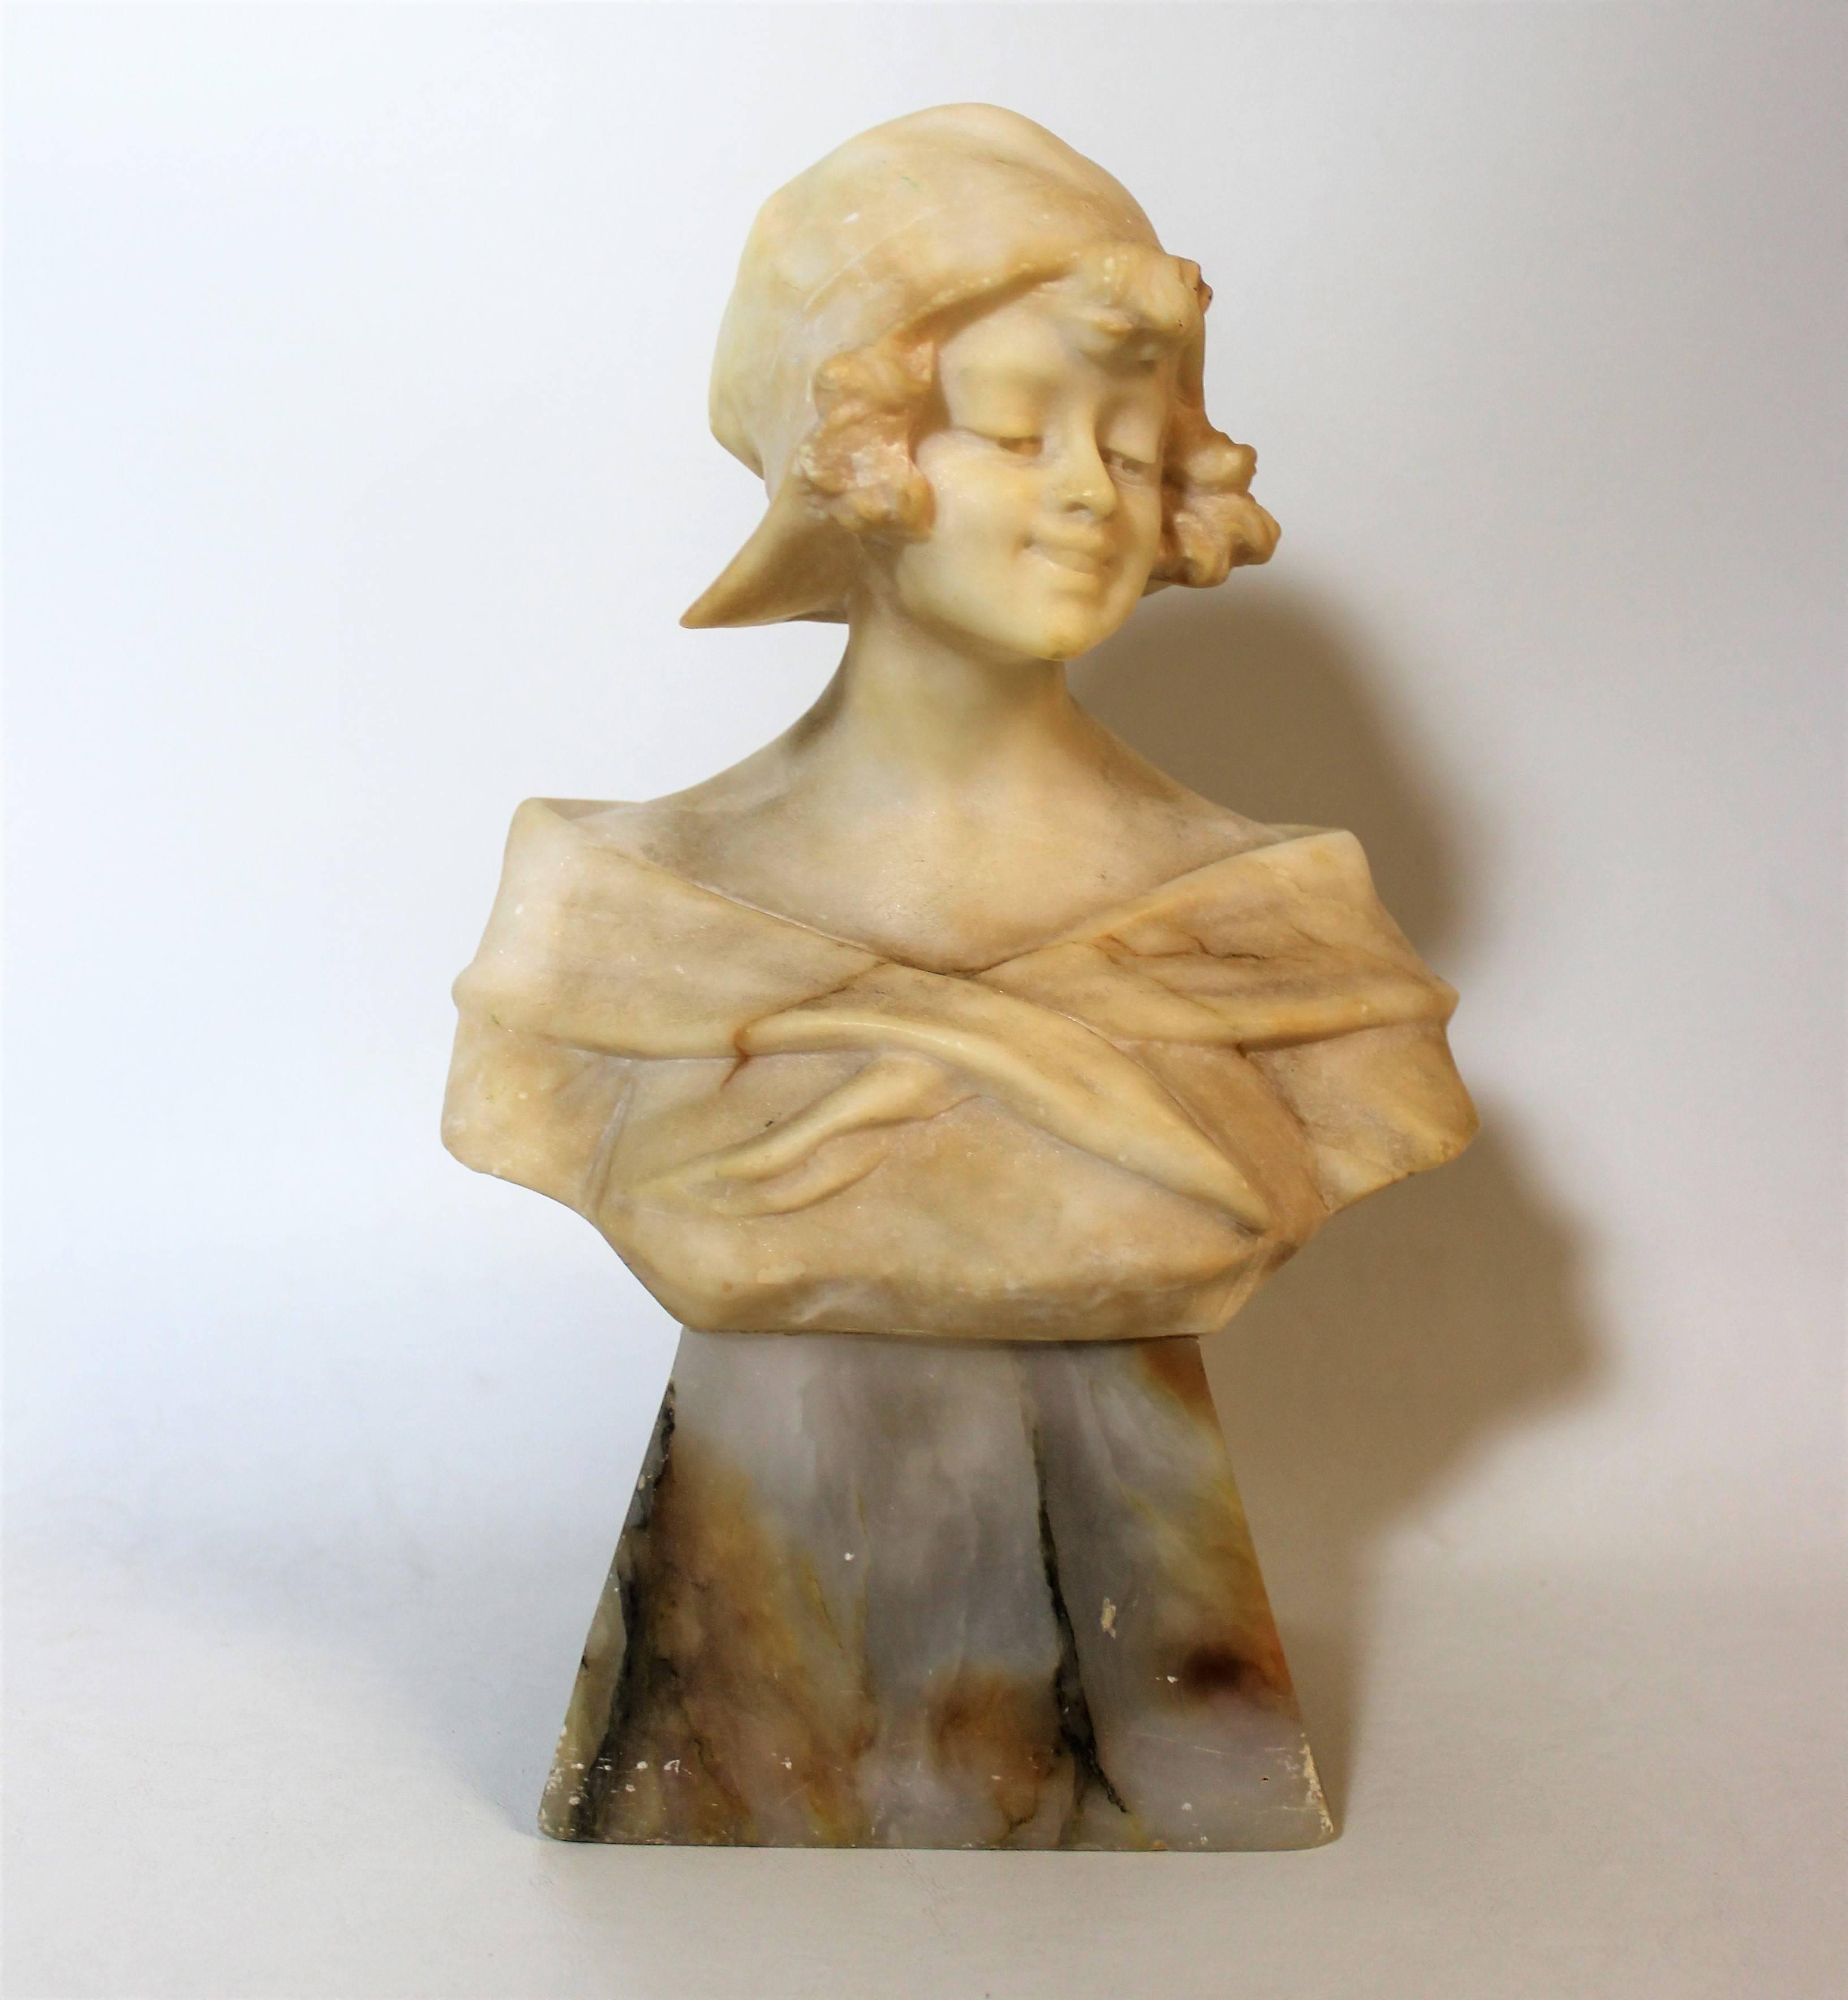 Belle sculpture en albâtre d'une dame Art Nouveau reposant sur un socle en marbre. Signé R. Schoggi.